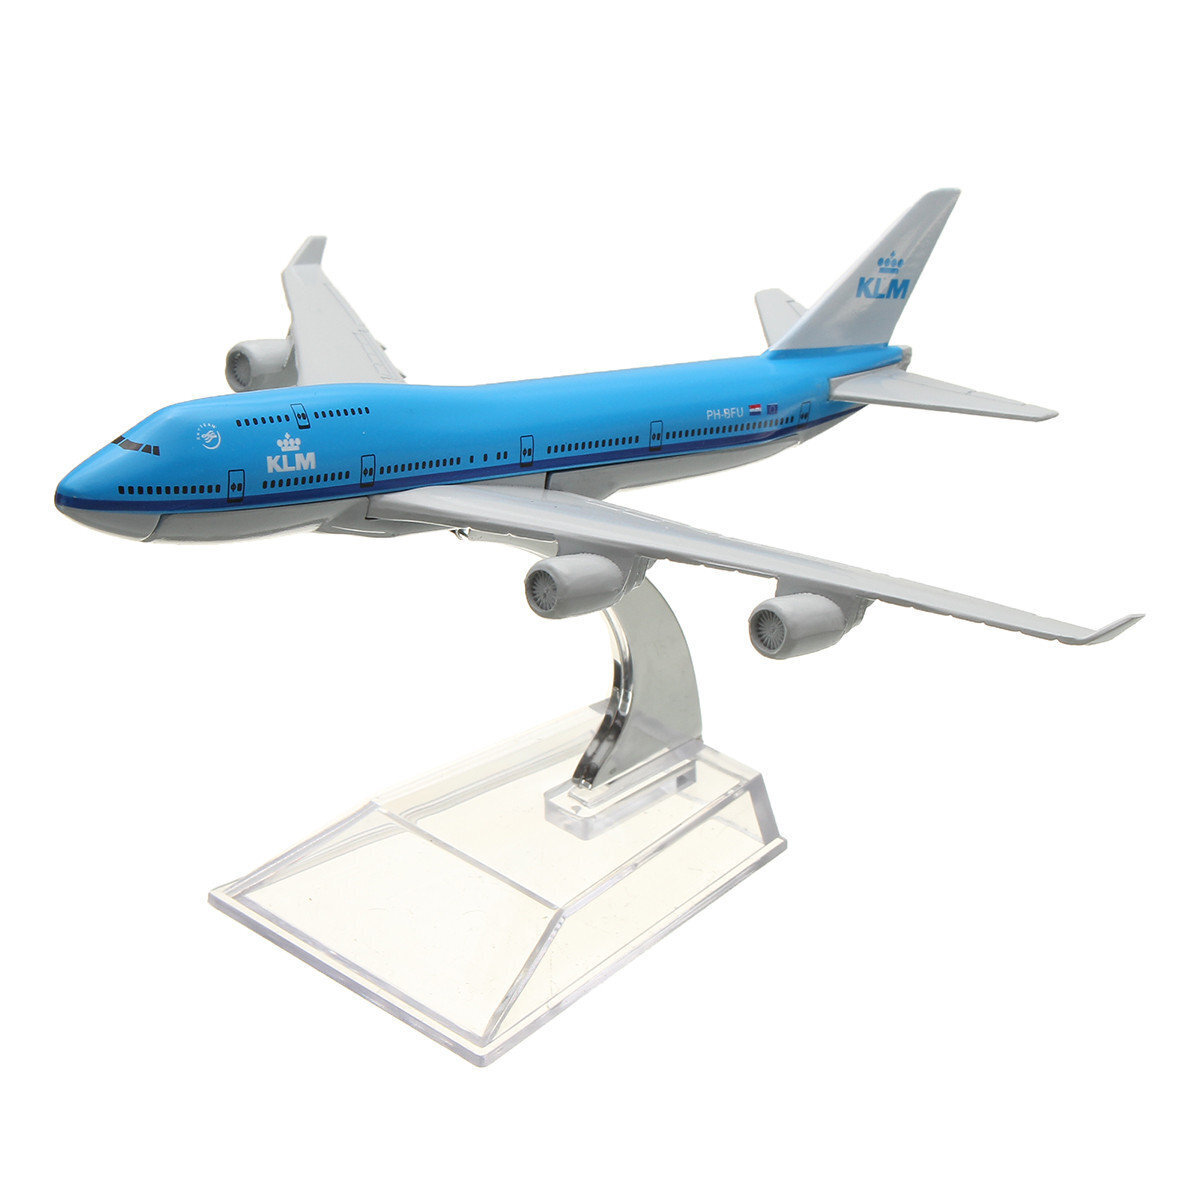 Купить металлический самолет. Металлическая модель самолета Боинг 747. Боинг 747 модель КЛМ. Модель самолета Боинг 747 авиакомпания КЛМ. 747 КЛМ модель самолета.